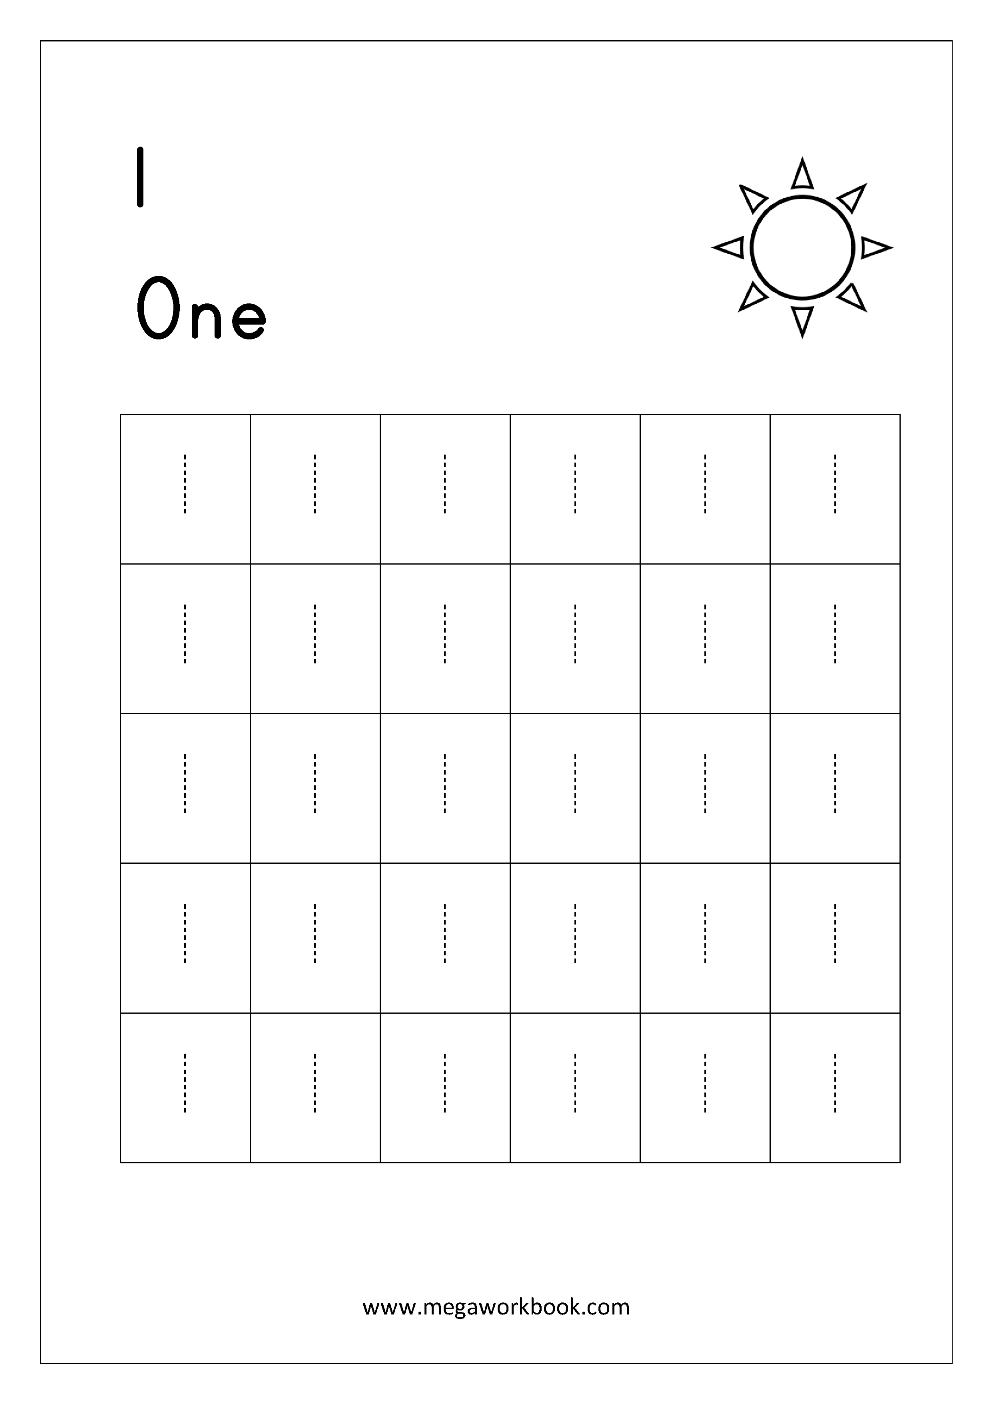 Free Printable Number Tracing And Writing (1-10) Worksheets - Number | Number One Worksheet Preschool Printable Activities